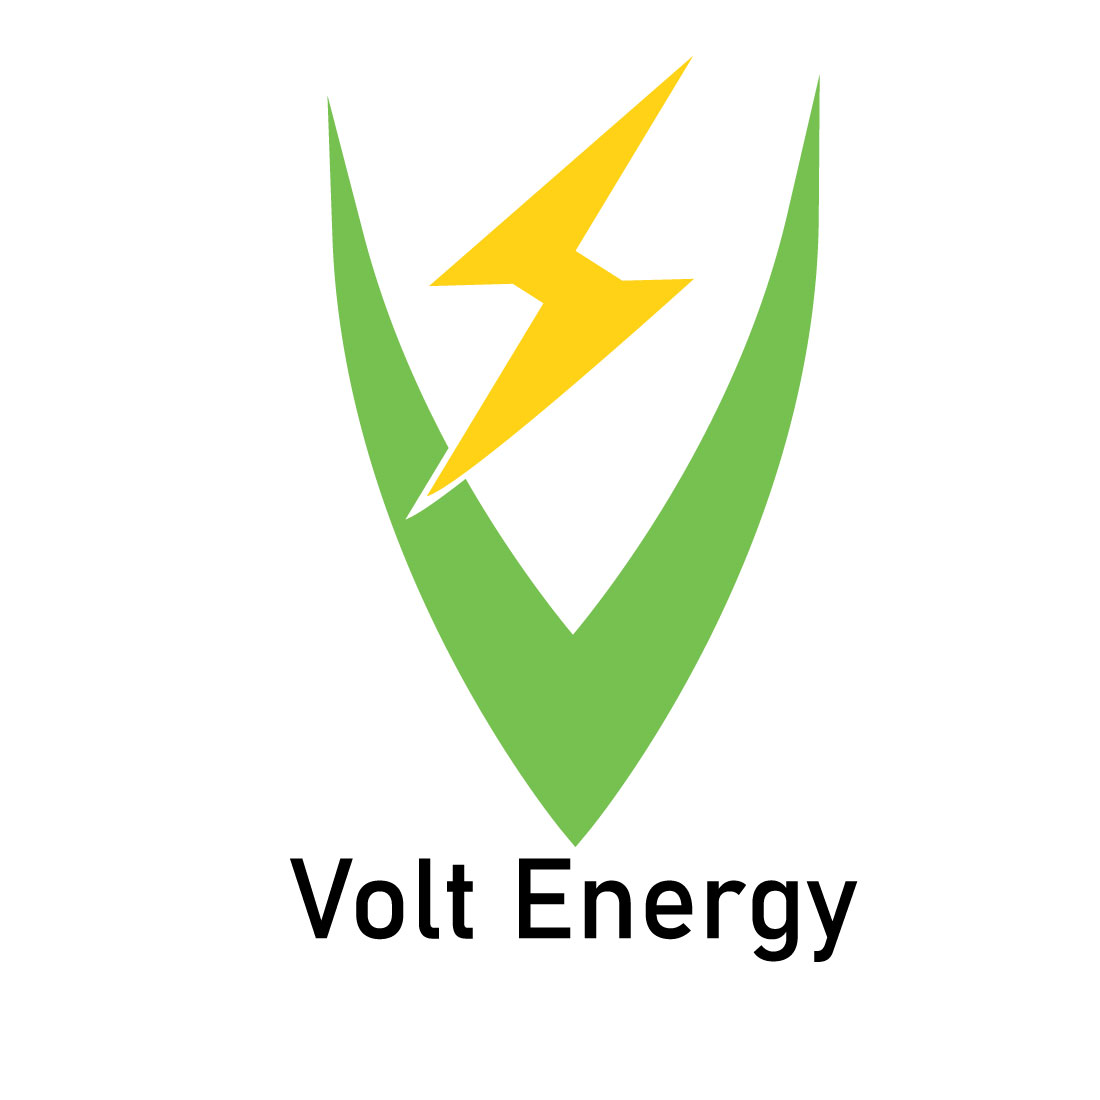 Logo Volt Energy previews.